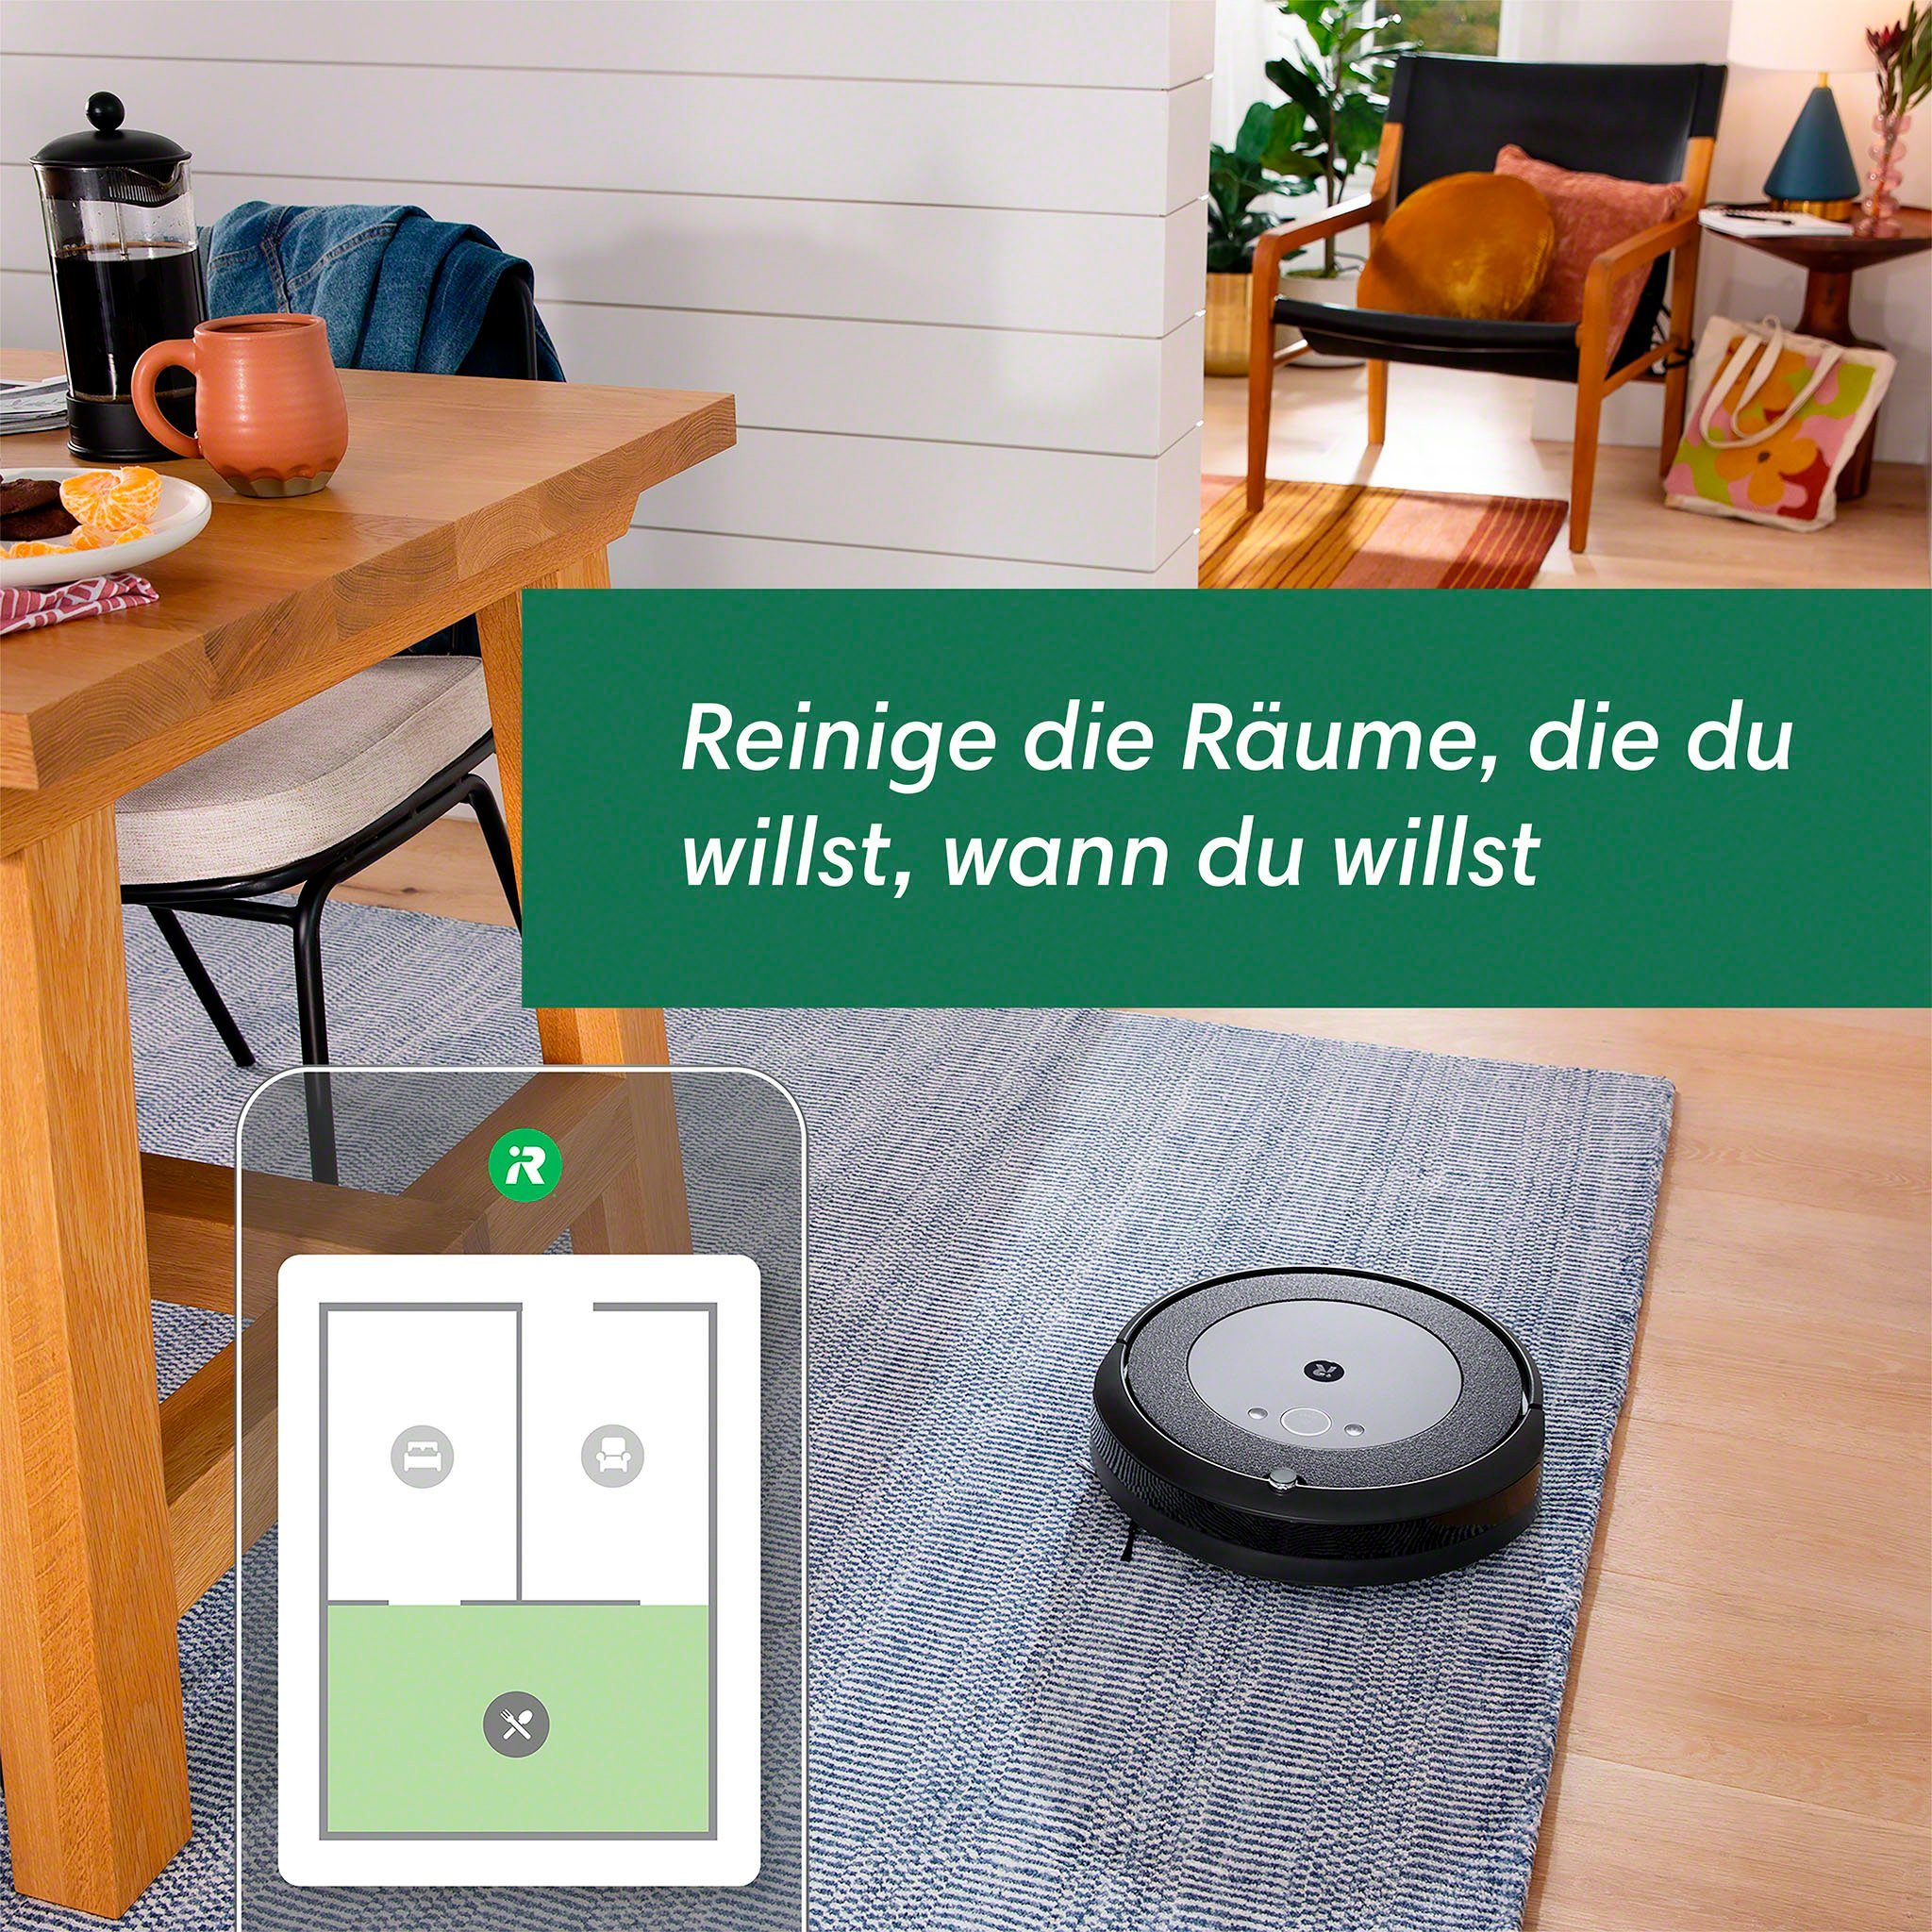 (i5154), beutellos, Einzelraumkartierung, Saugroboter Roomba i5 App-/Sprachsteuerung iRobot